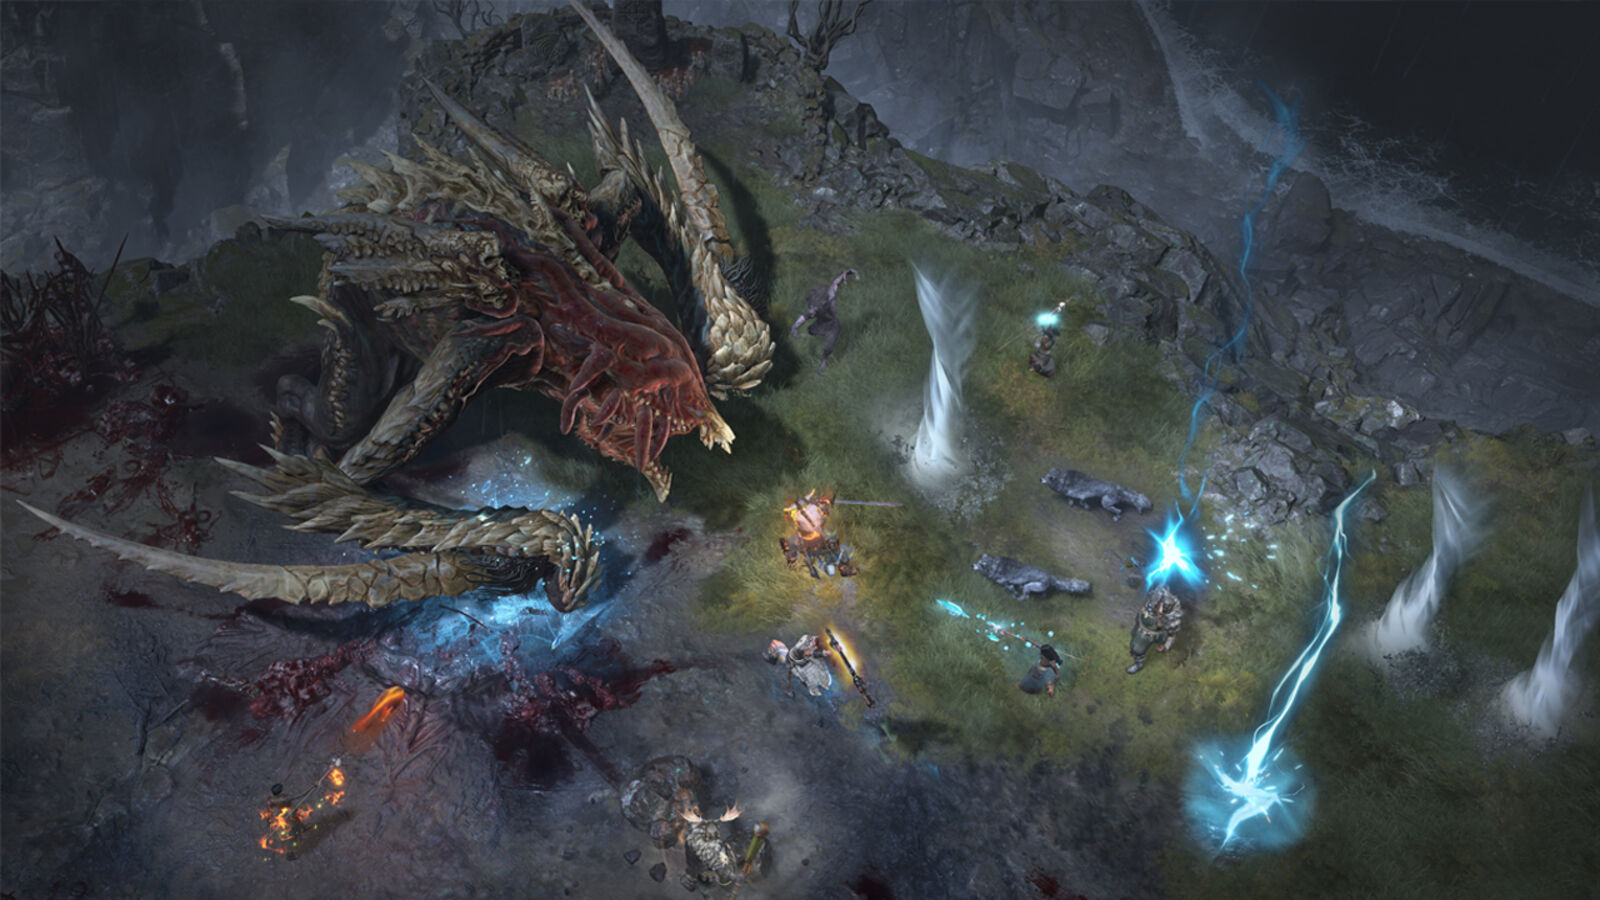 La data di rilascio di Diablo 4 non è possibile senza Crunch, afferma un rapporto recente